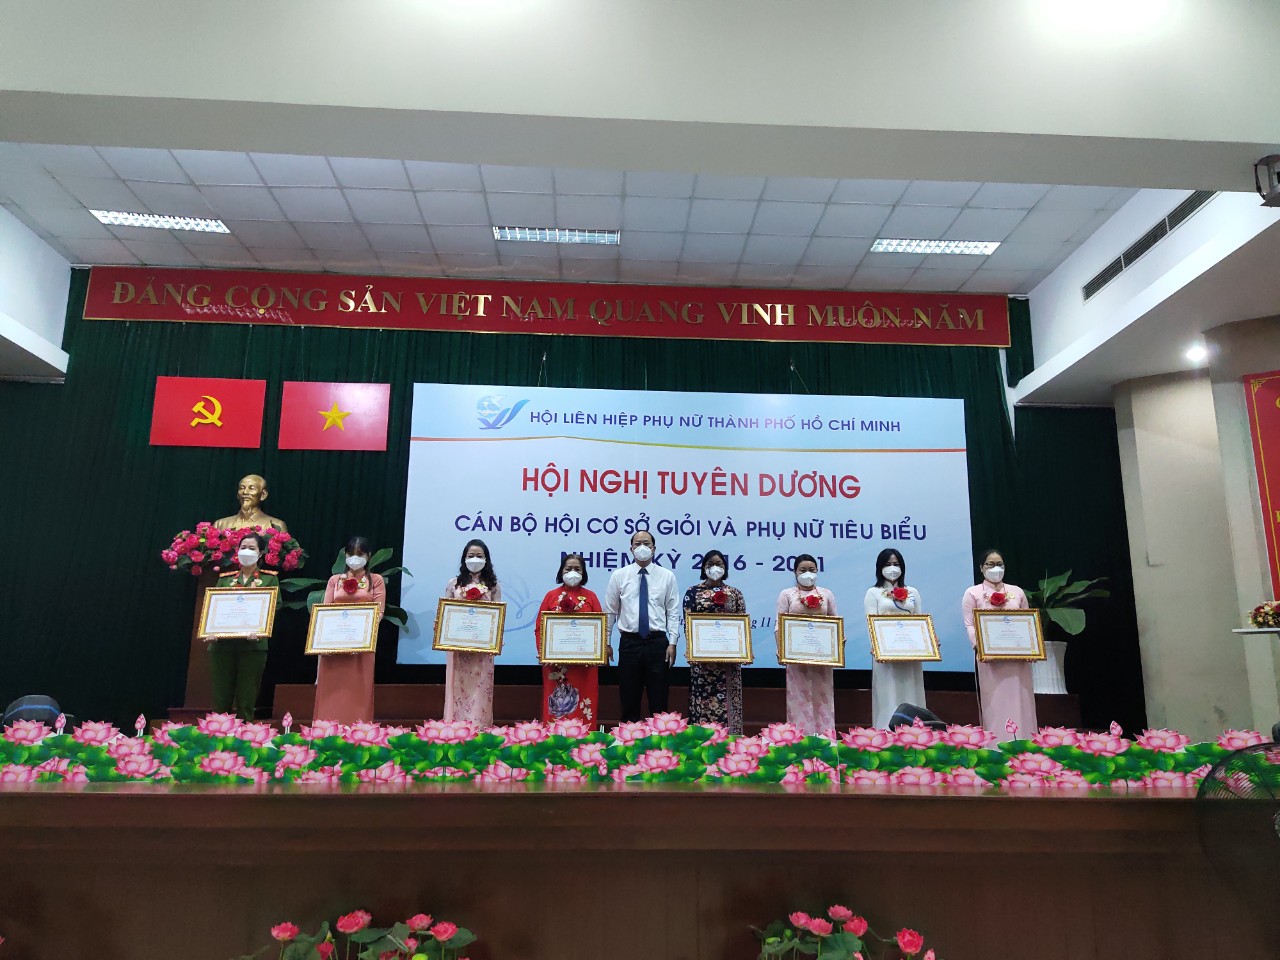 8 cá nhân được nhận bằng khen của Hội Liên Hiệp Phụ nữ Việt Nam